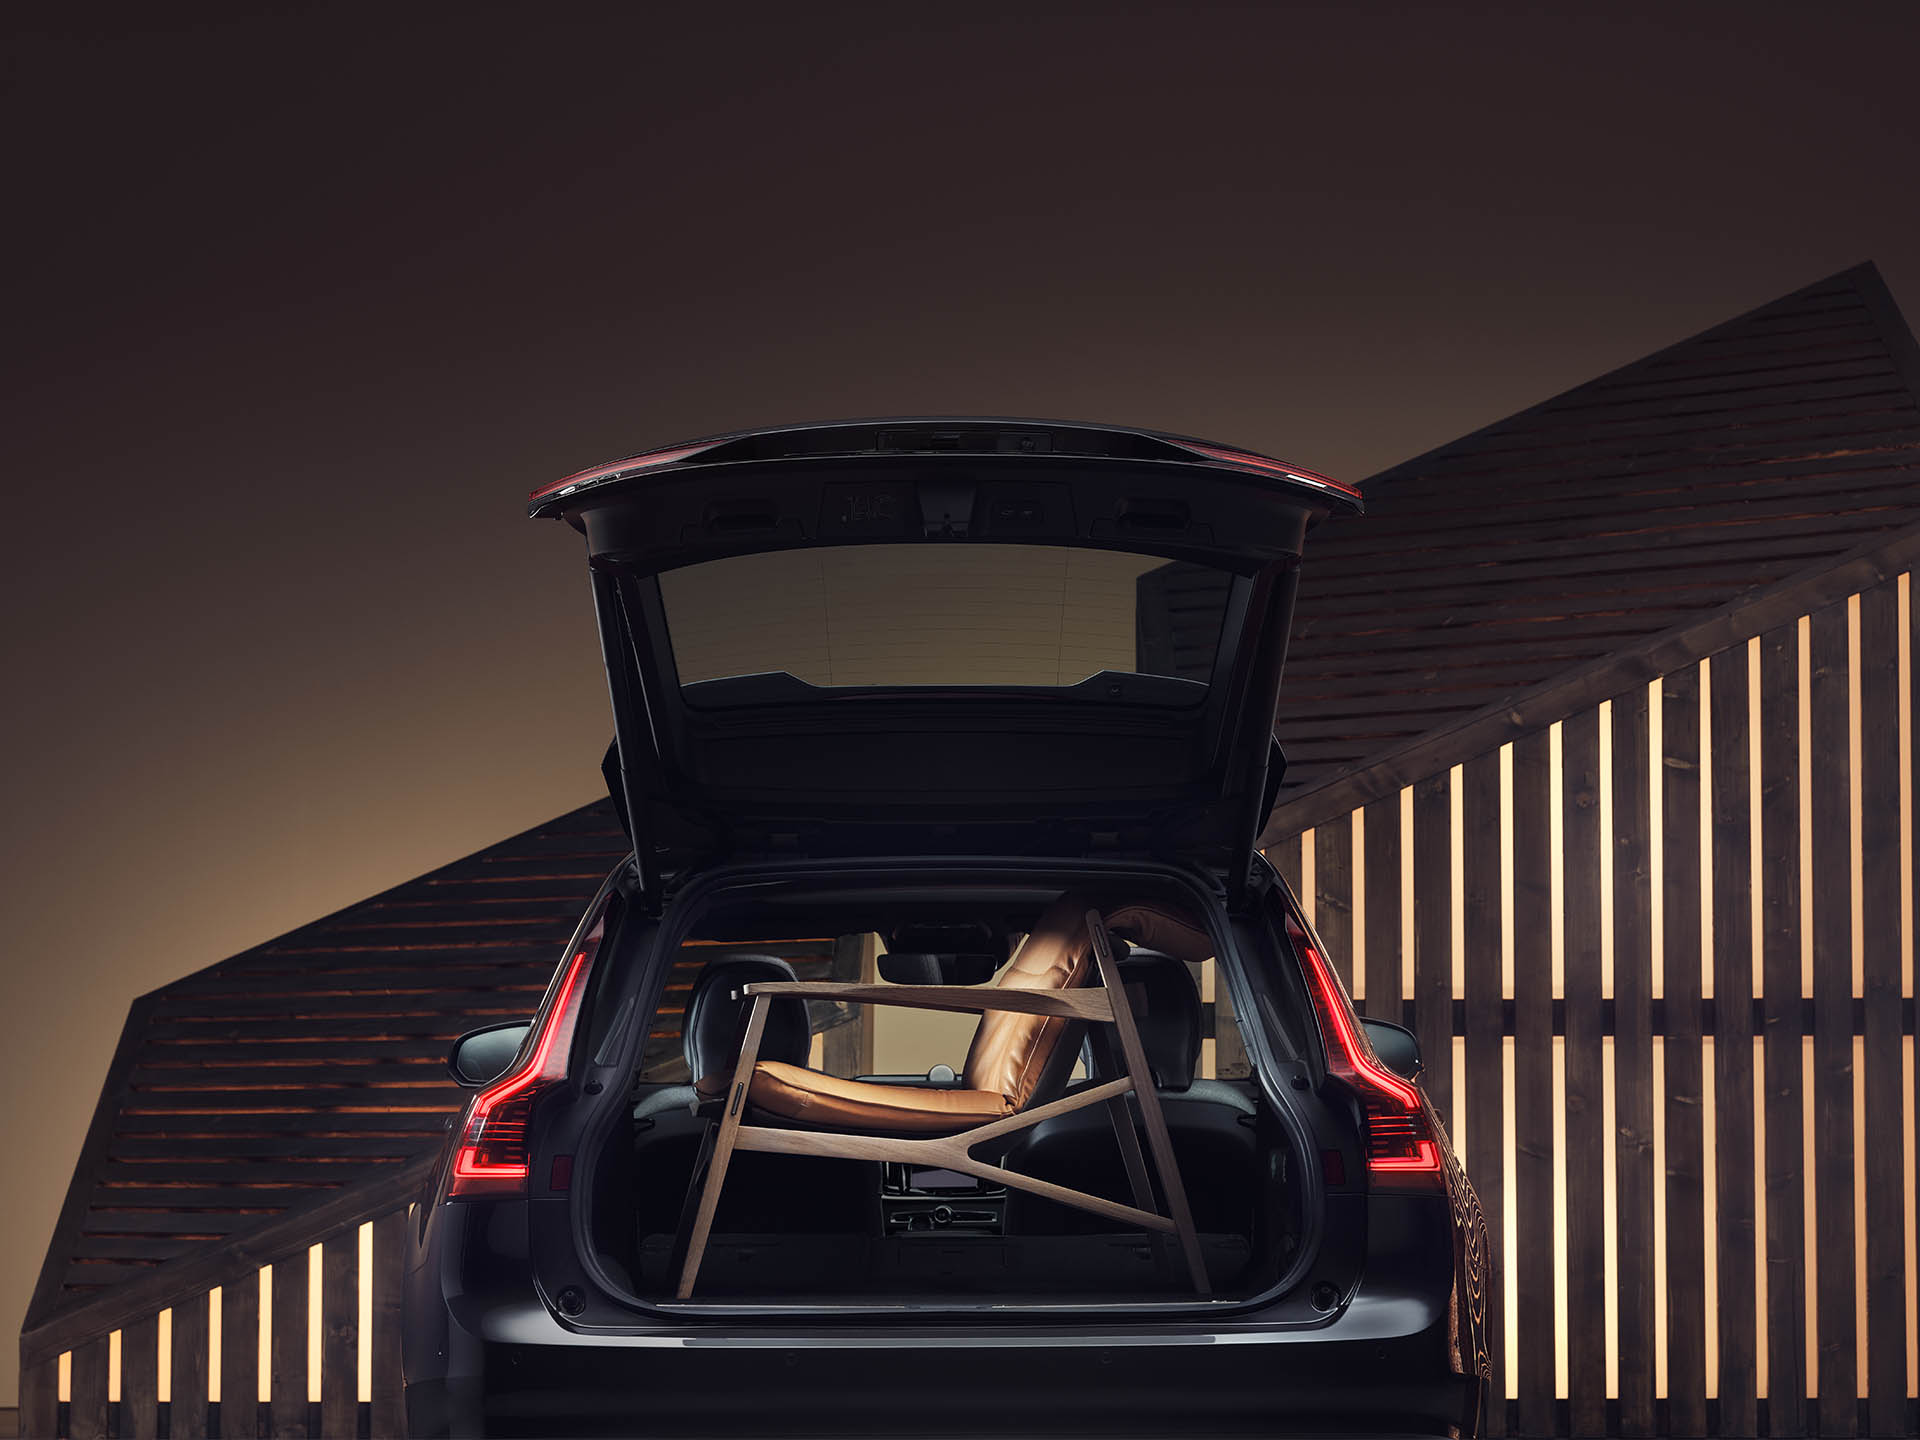 U prostoru prtljažnika Volvo karavana nalazi se smeđa elegantna fotelja